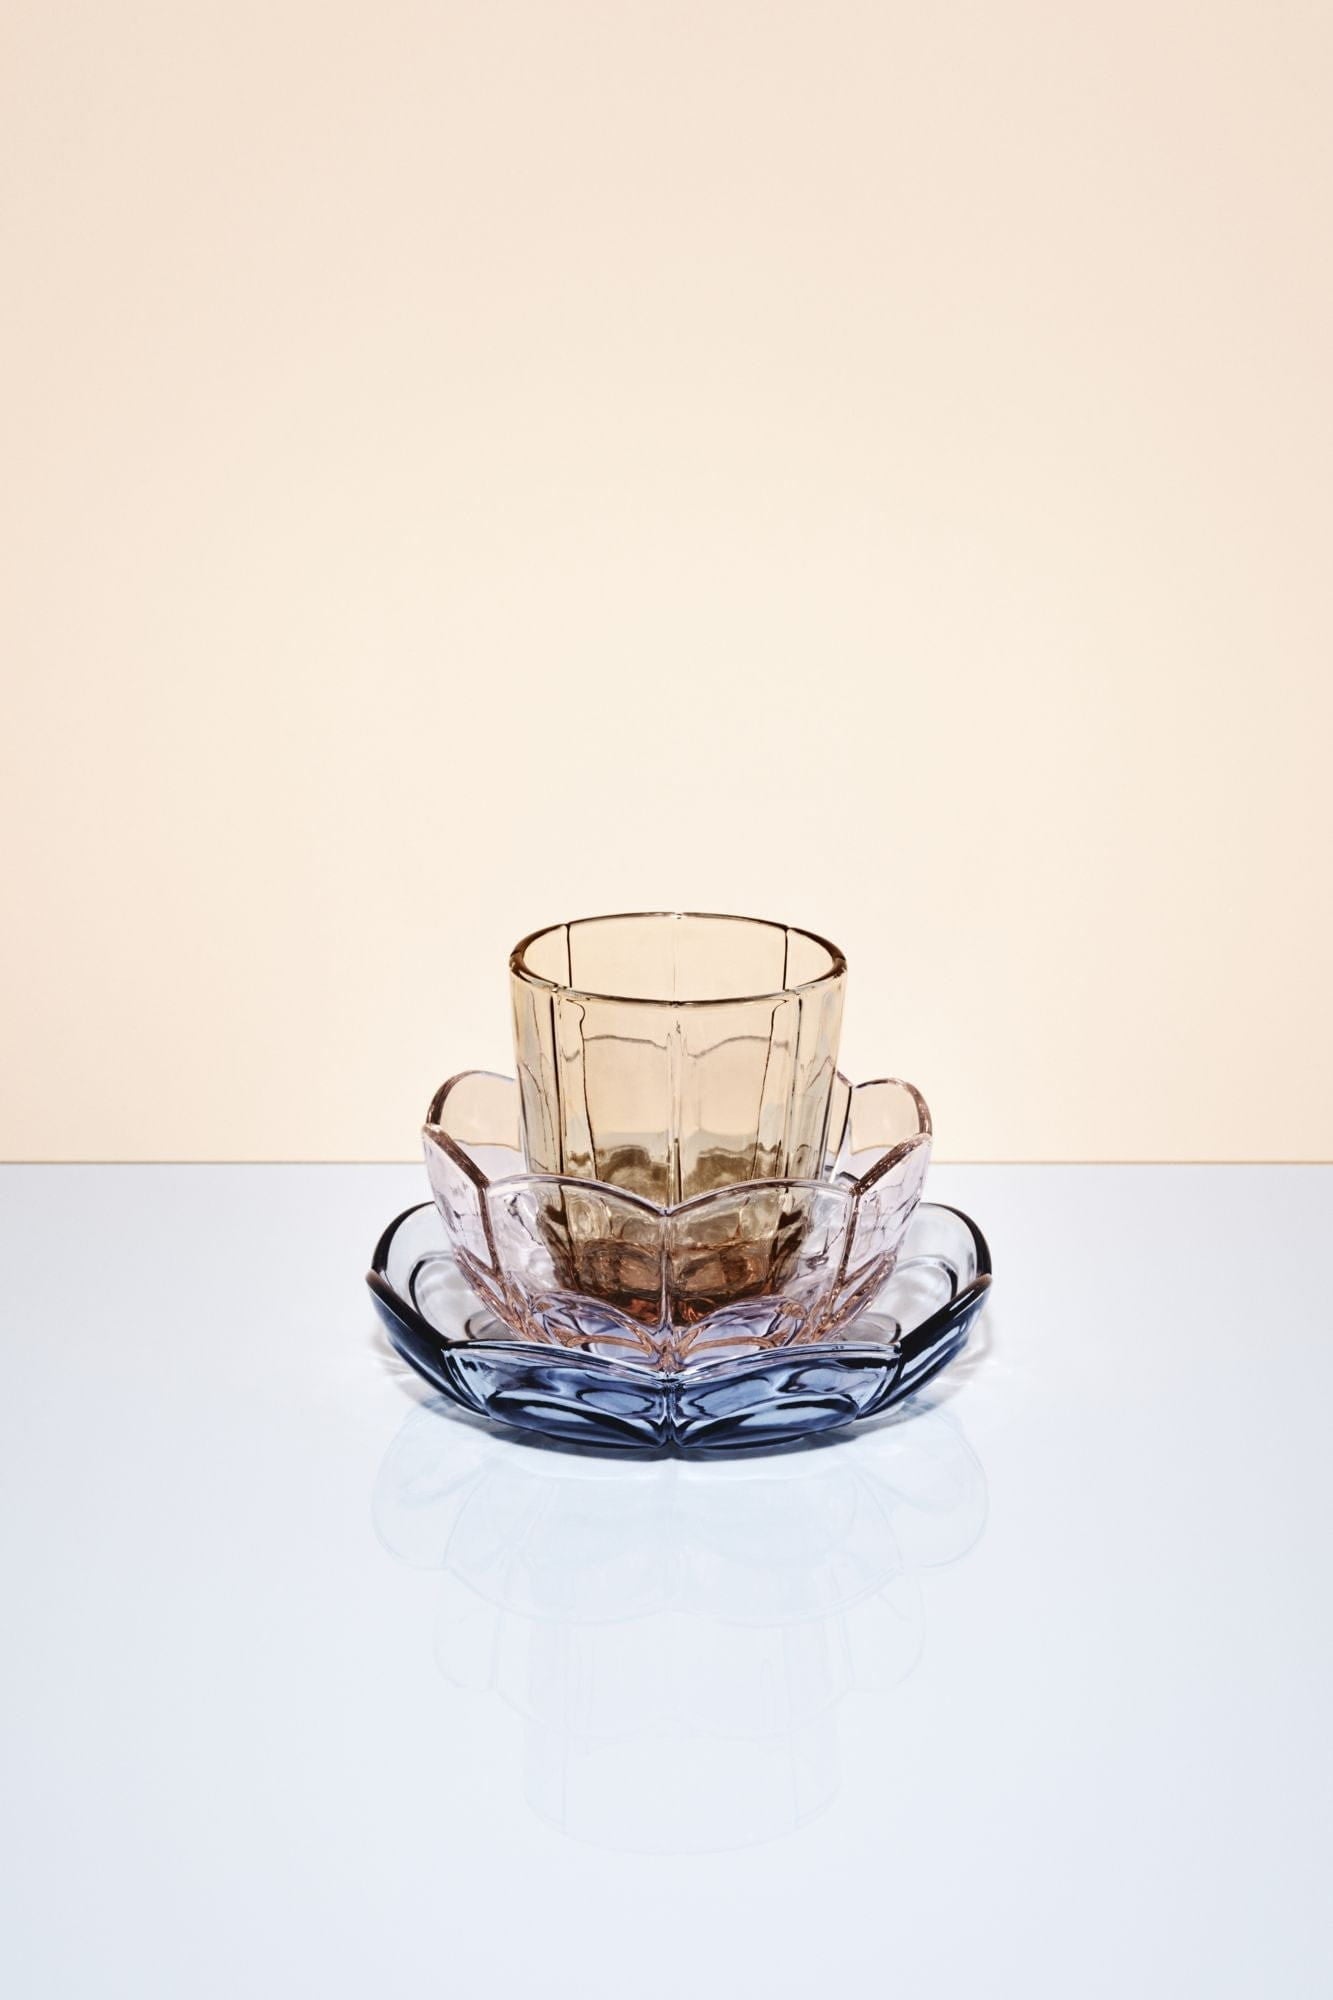 Juego de vidrio de agua Holmegaard Lily de 2 320 ml, marrón